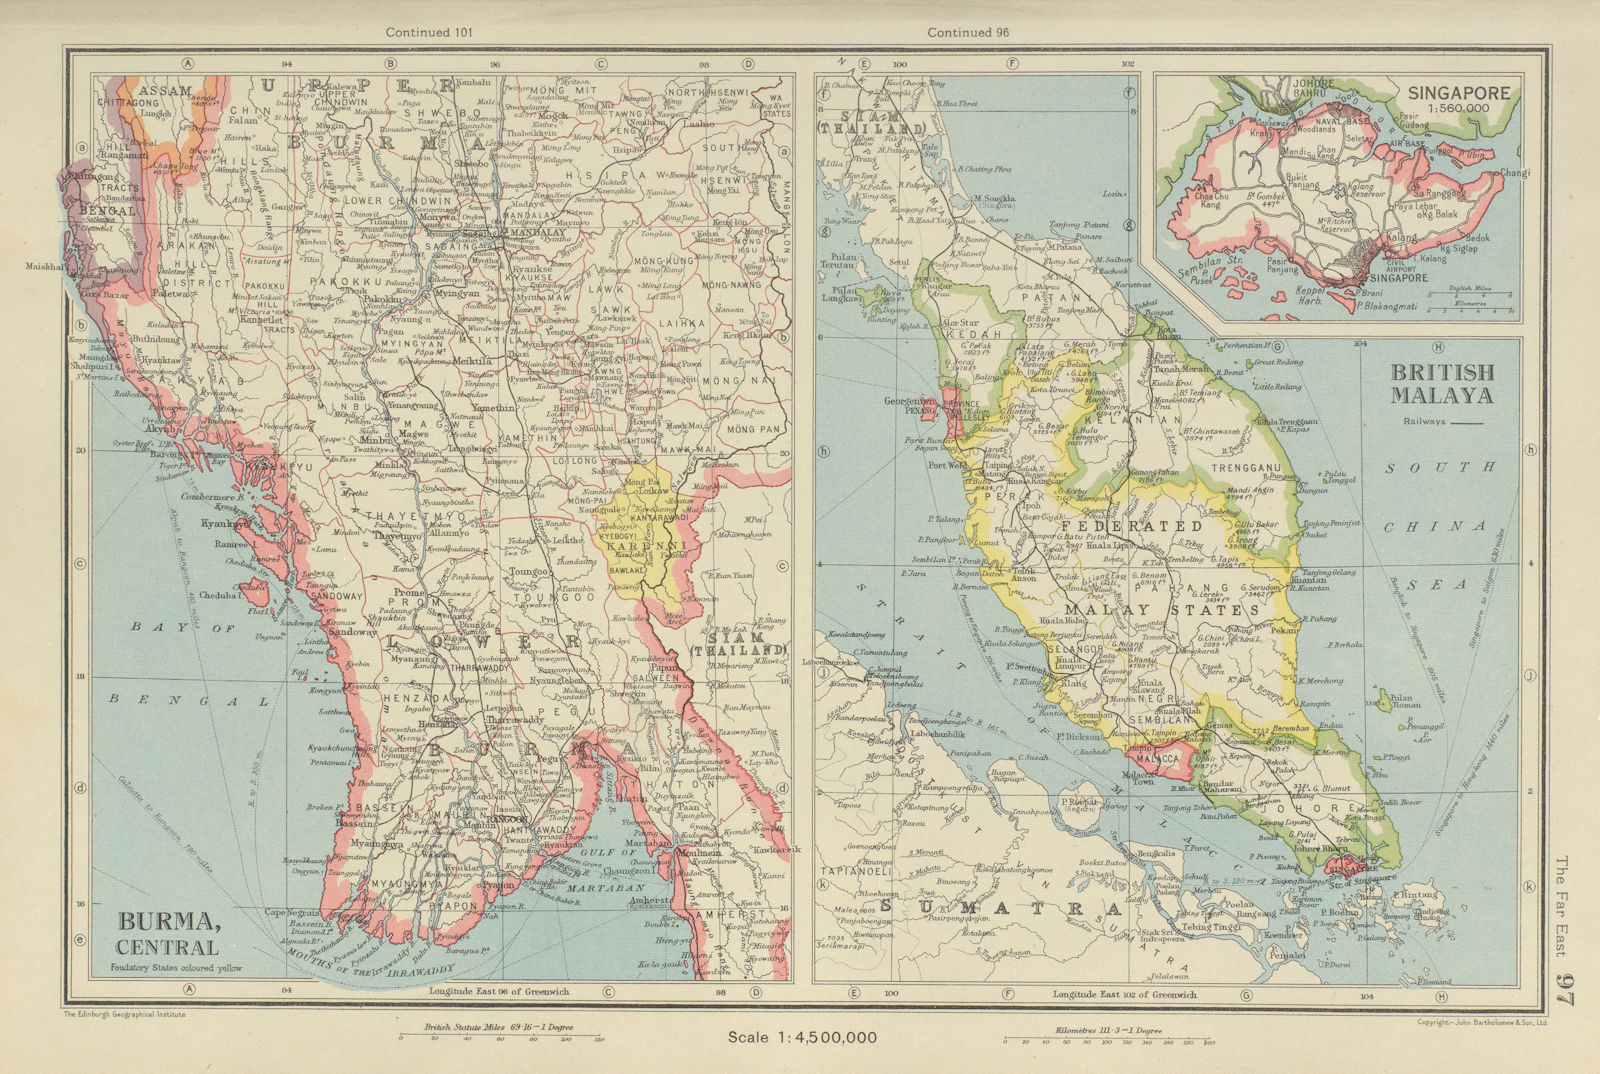 MALAYA & CENTRAL BURMA. Singapore Penang Malacca Federated Malay States 1947 map